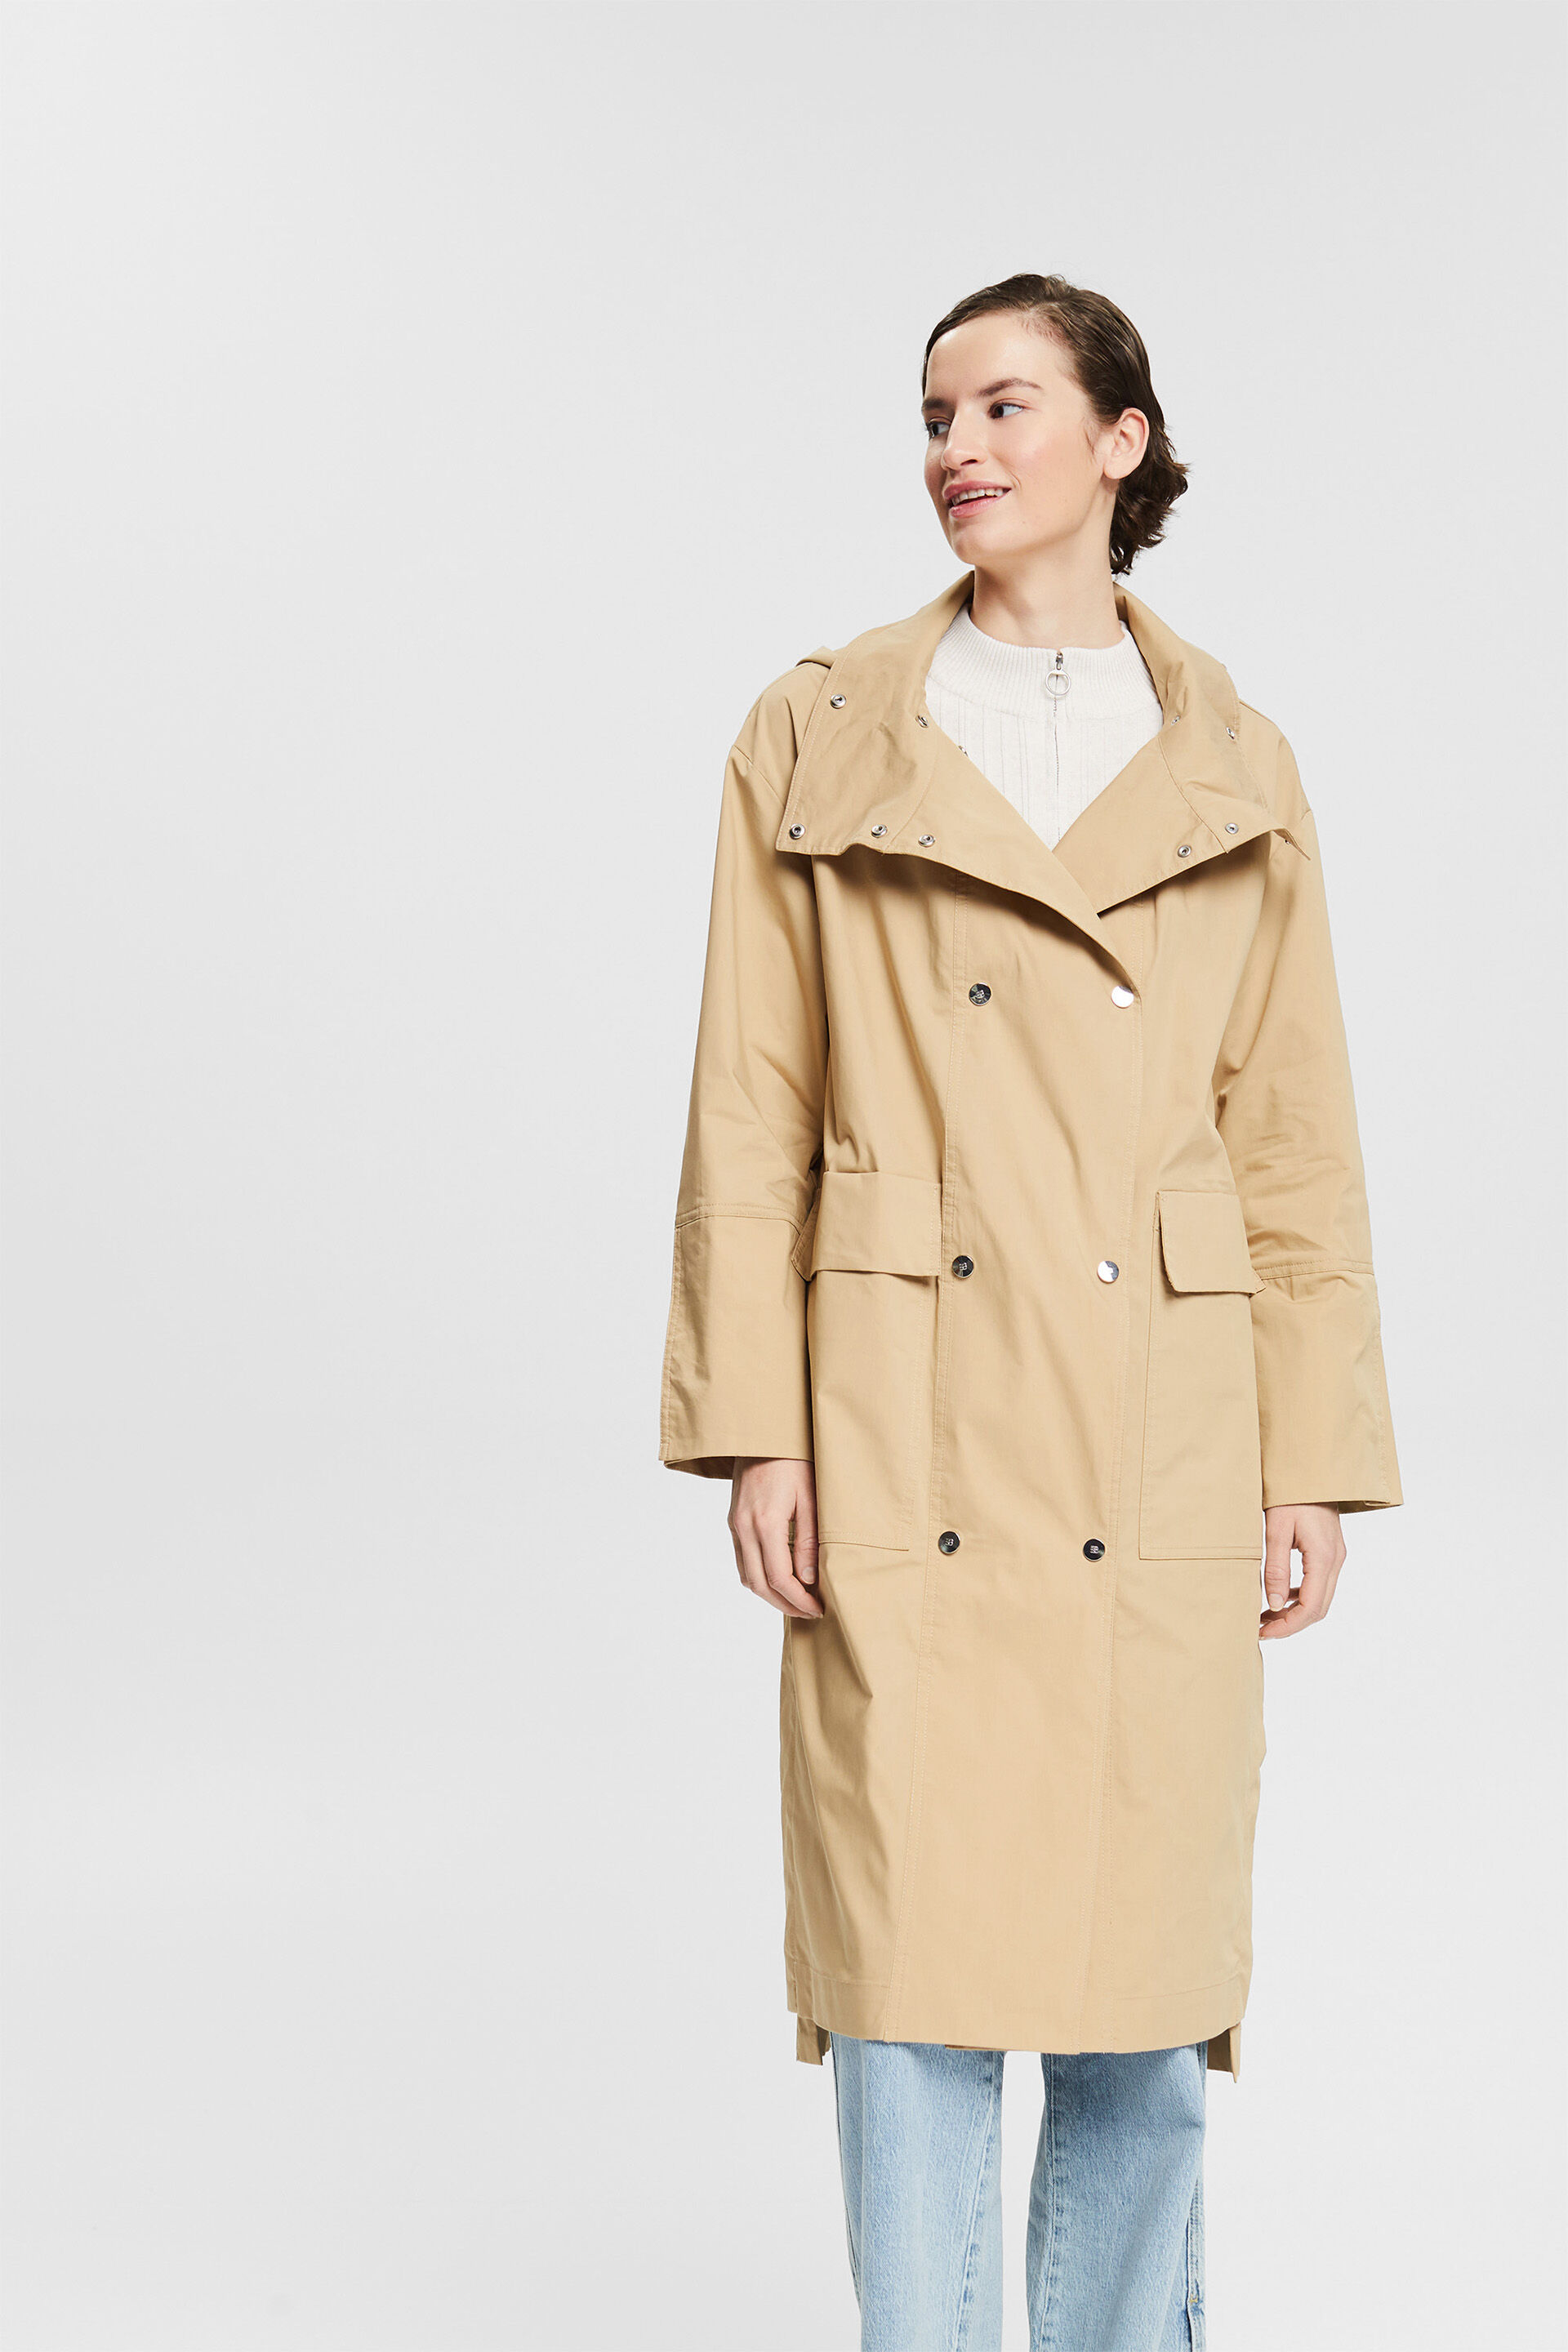 Trench Esprit en coloris Neutre Femme Vêtements Manteaux Imperméables et trench coats 